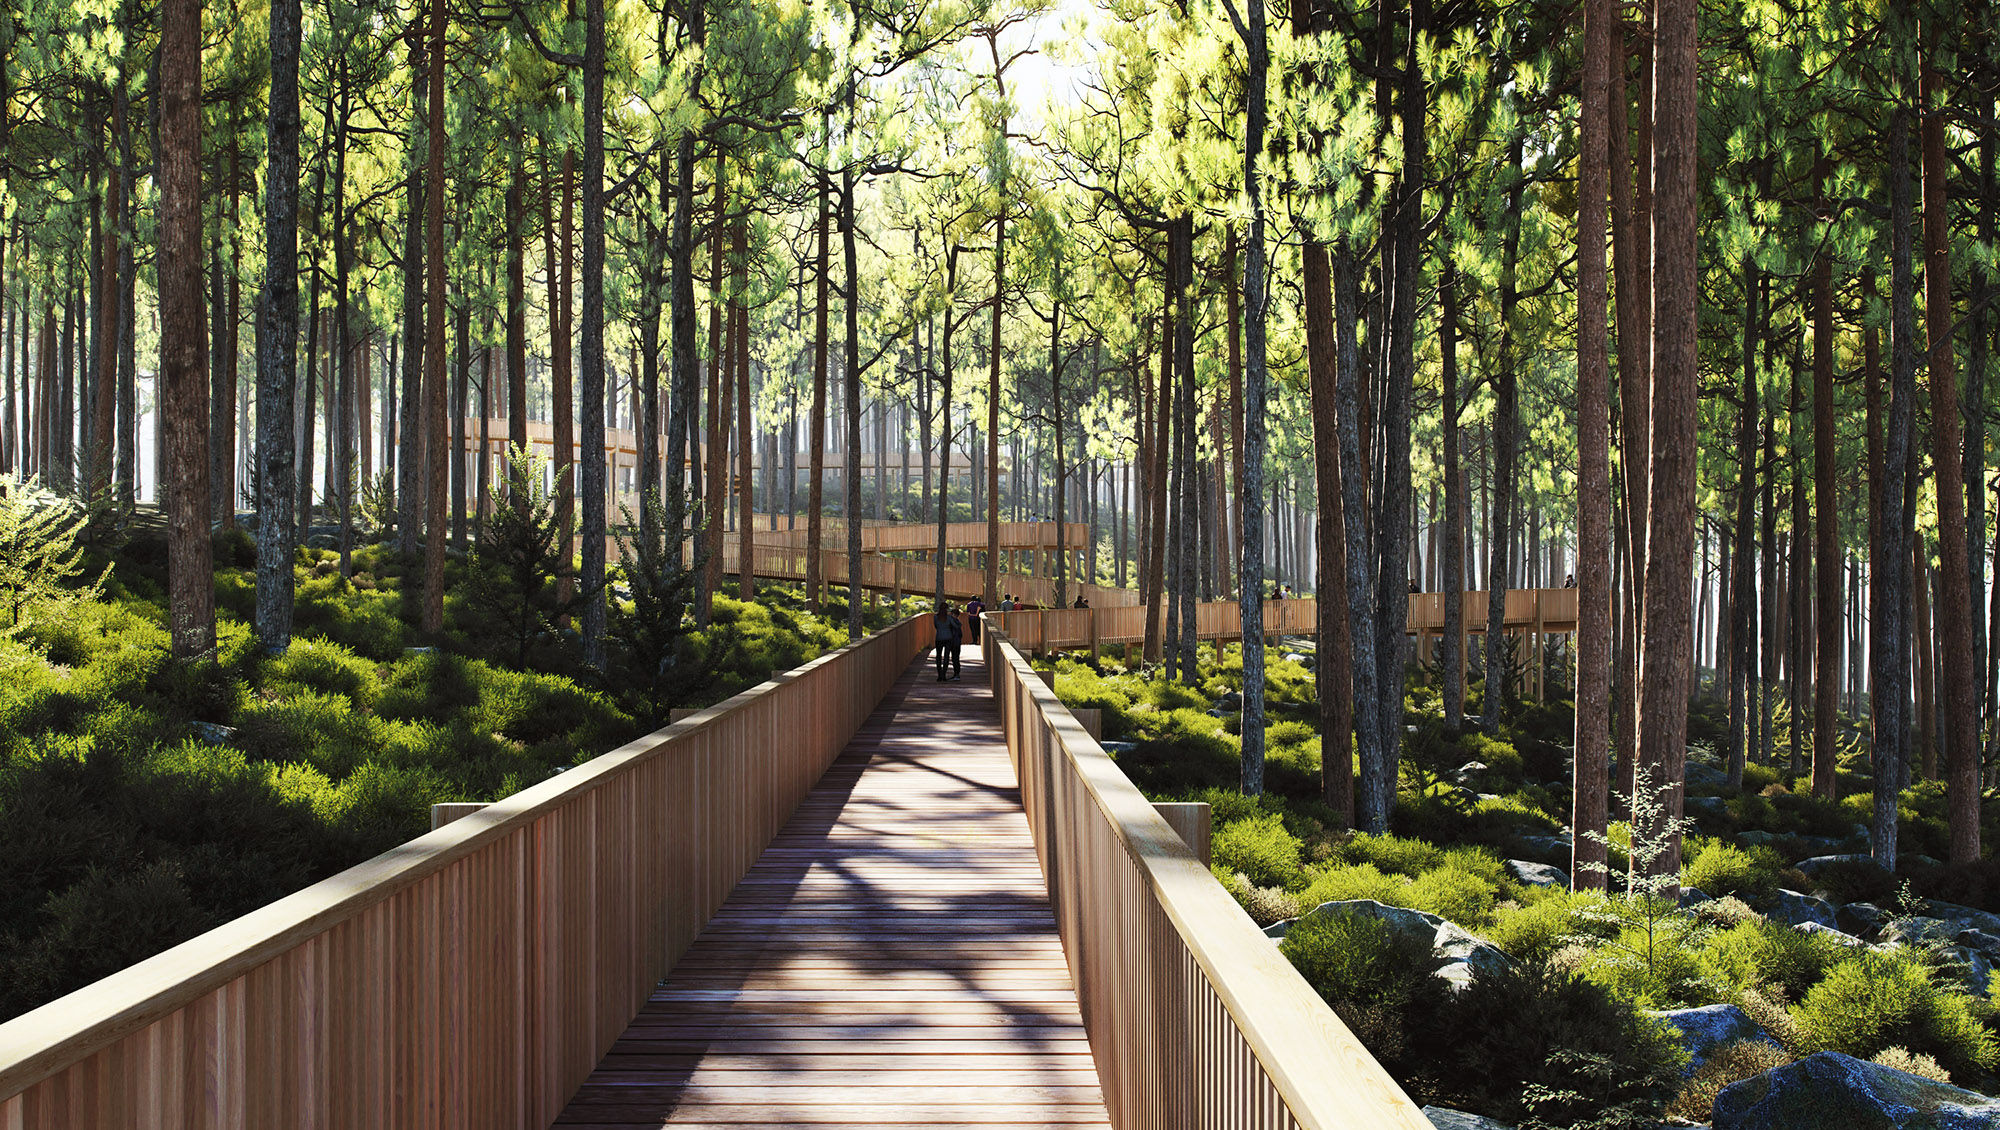 The Treetop Walk Hamaren Activity Park is set to open in June.